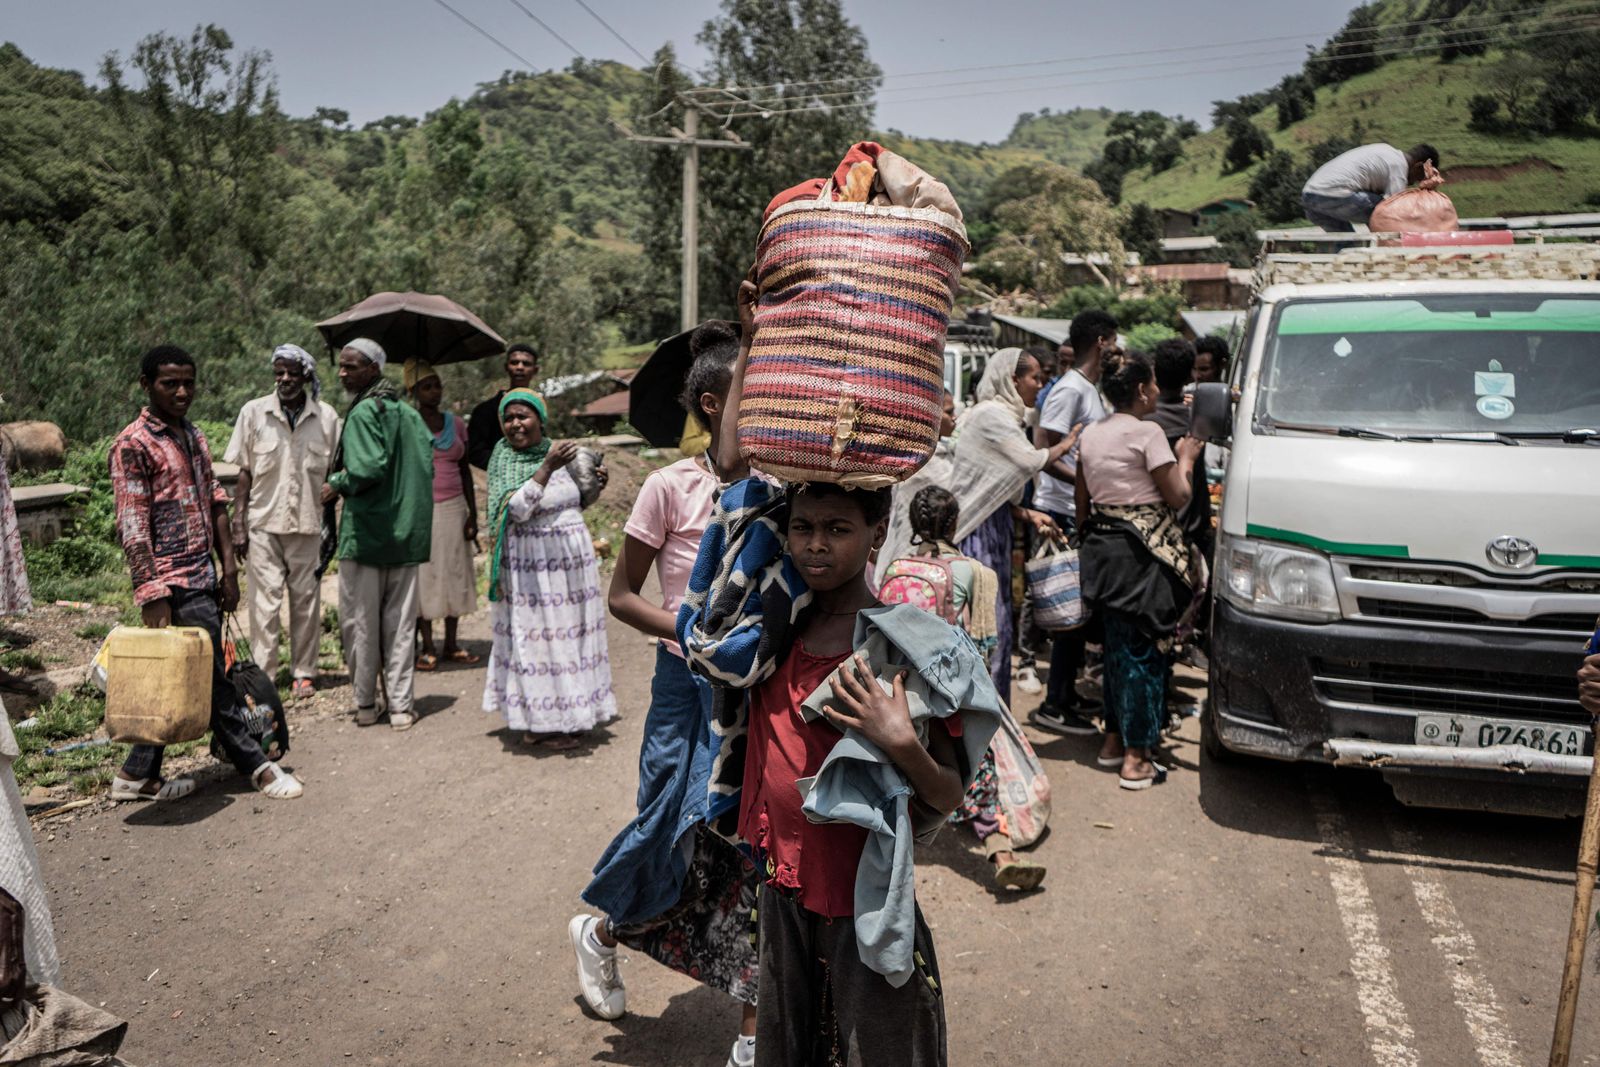 فتاة تحمل أغراضها وتغادر بعد معركة بين الجيش الإثيوبي ومقاتلي جبهة تحرير شعب تيجراي، إثيوبيا 16 سبتمبر 2021 - AFP